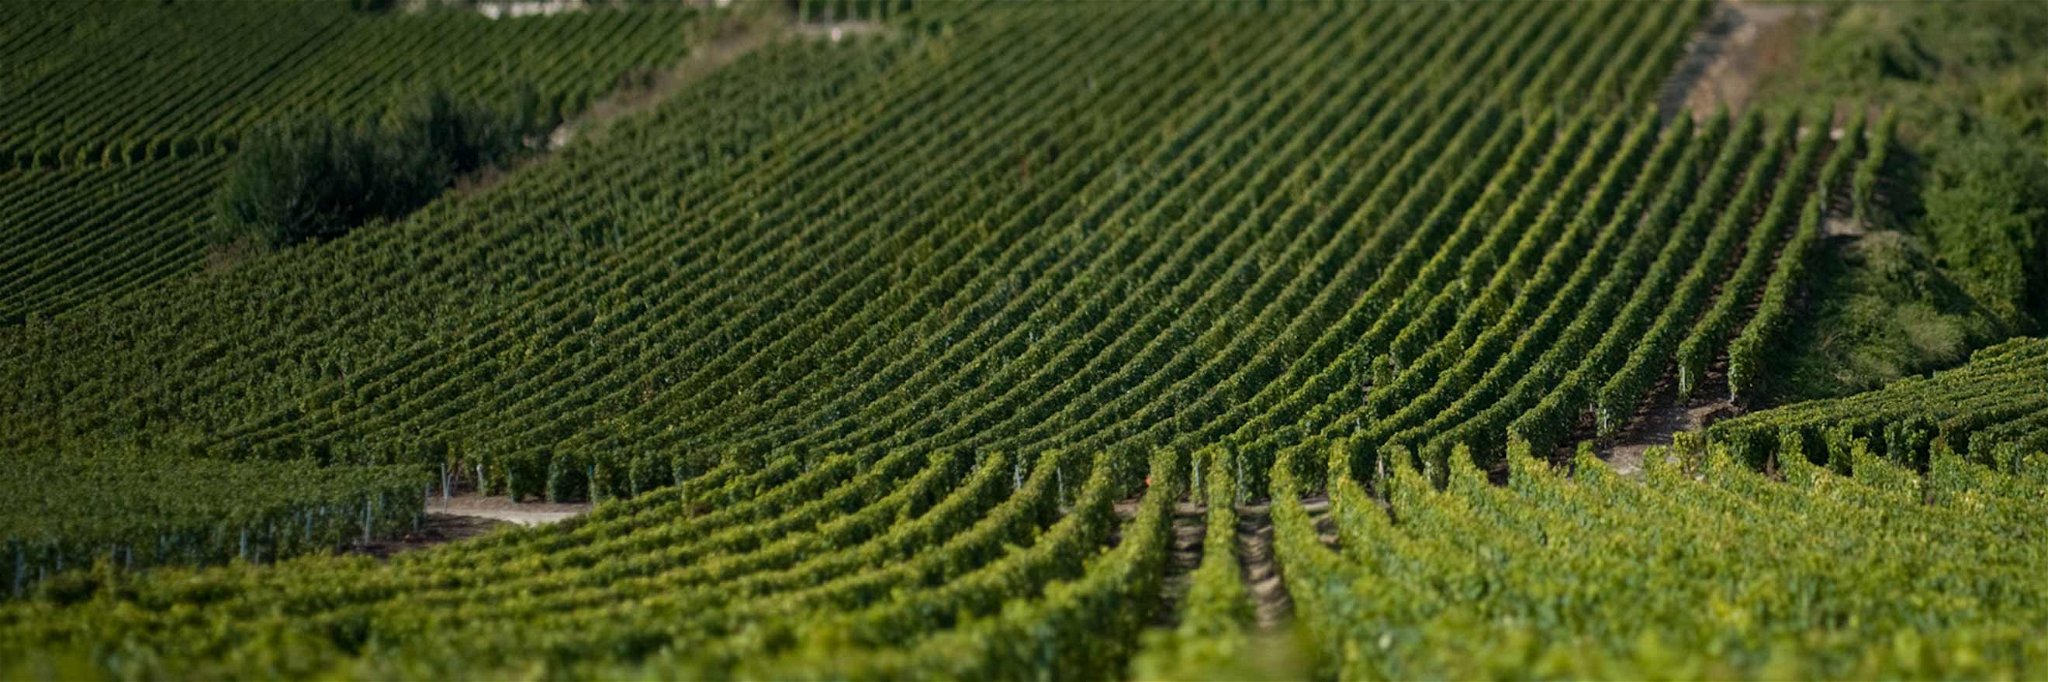 Krug-Weingärten in der Champagne